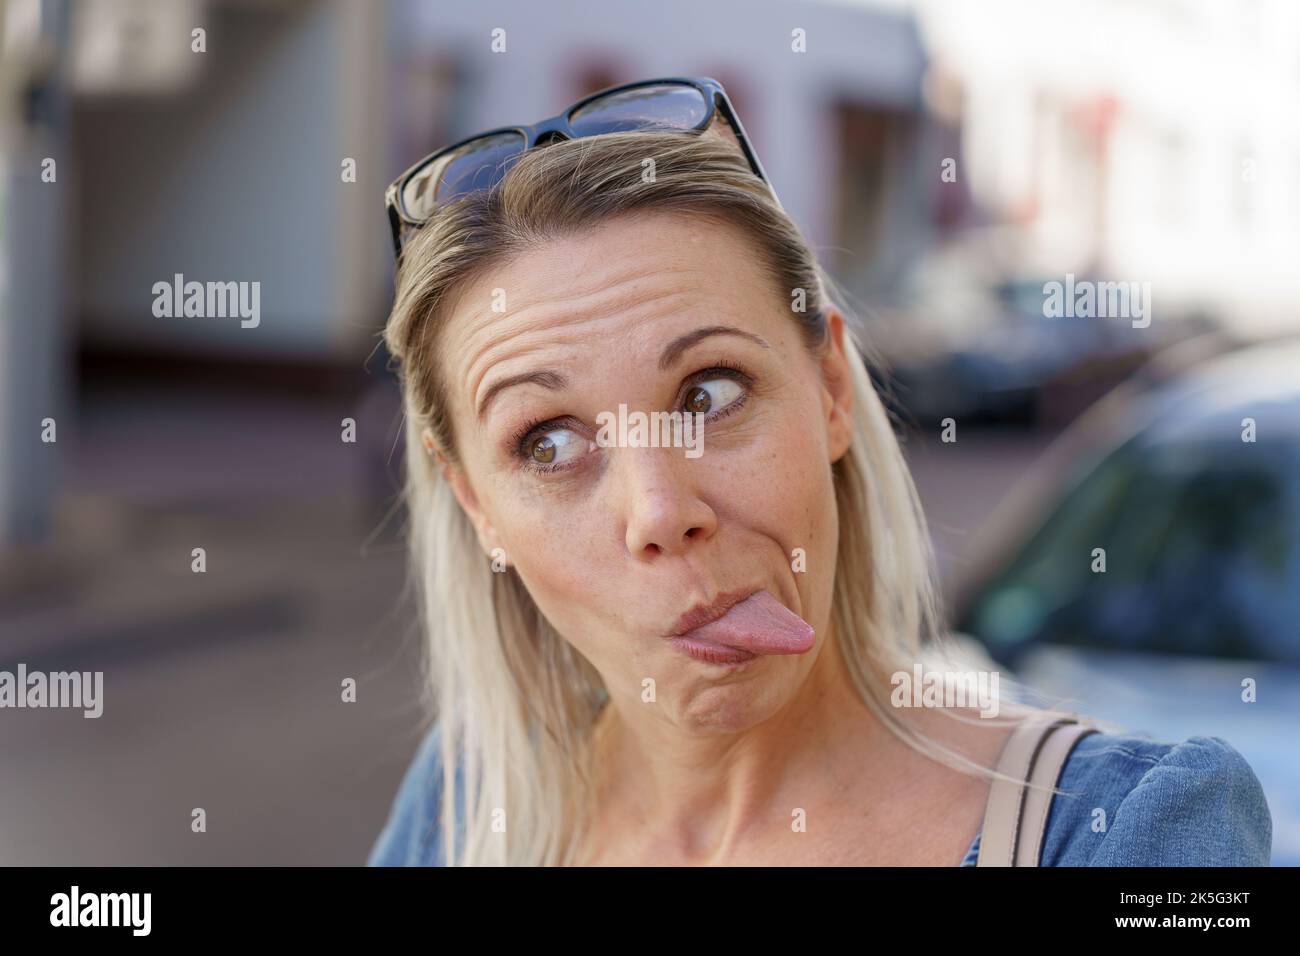 Femme blonde tendance tirant un visage drôle en collant sa langue à la caméra comme elle regarde loin Banque D'Images